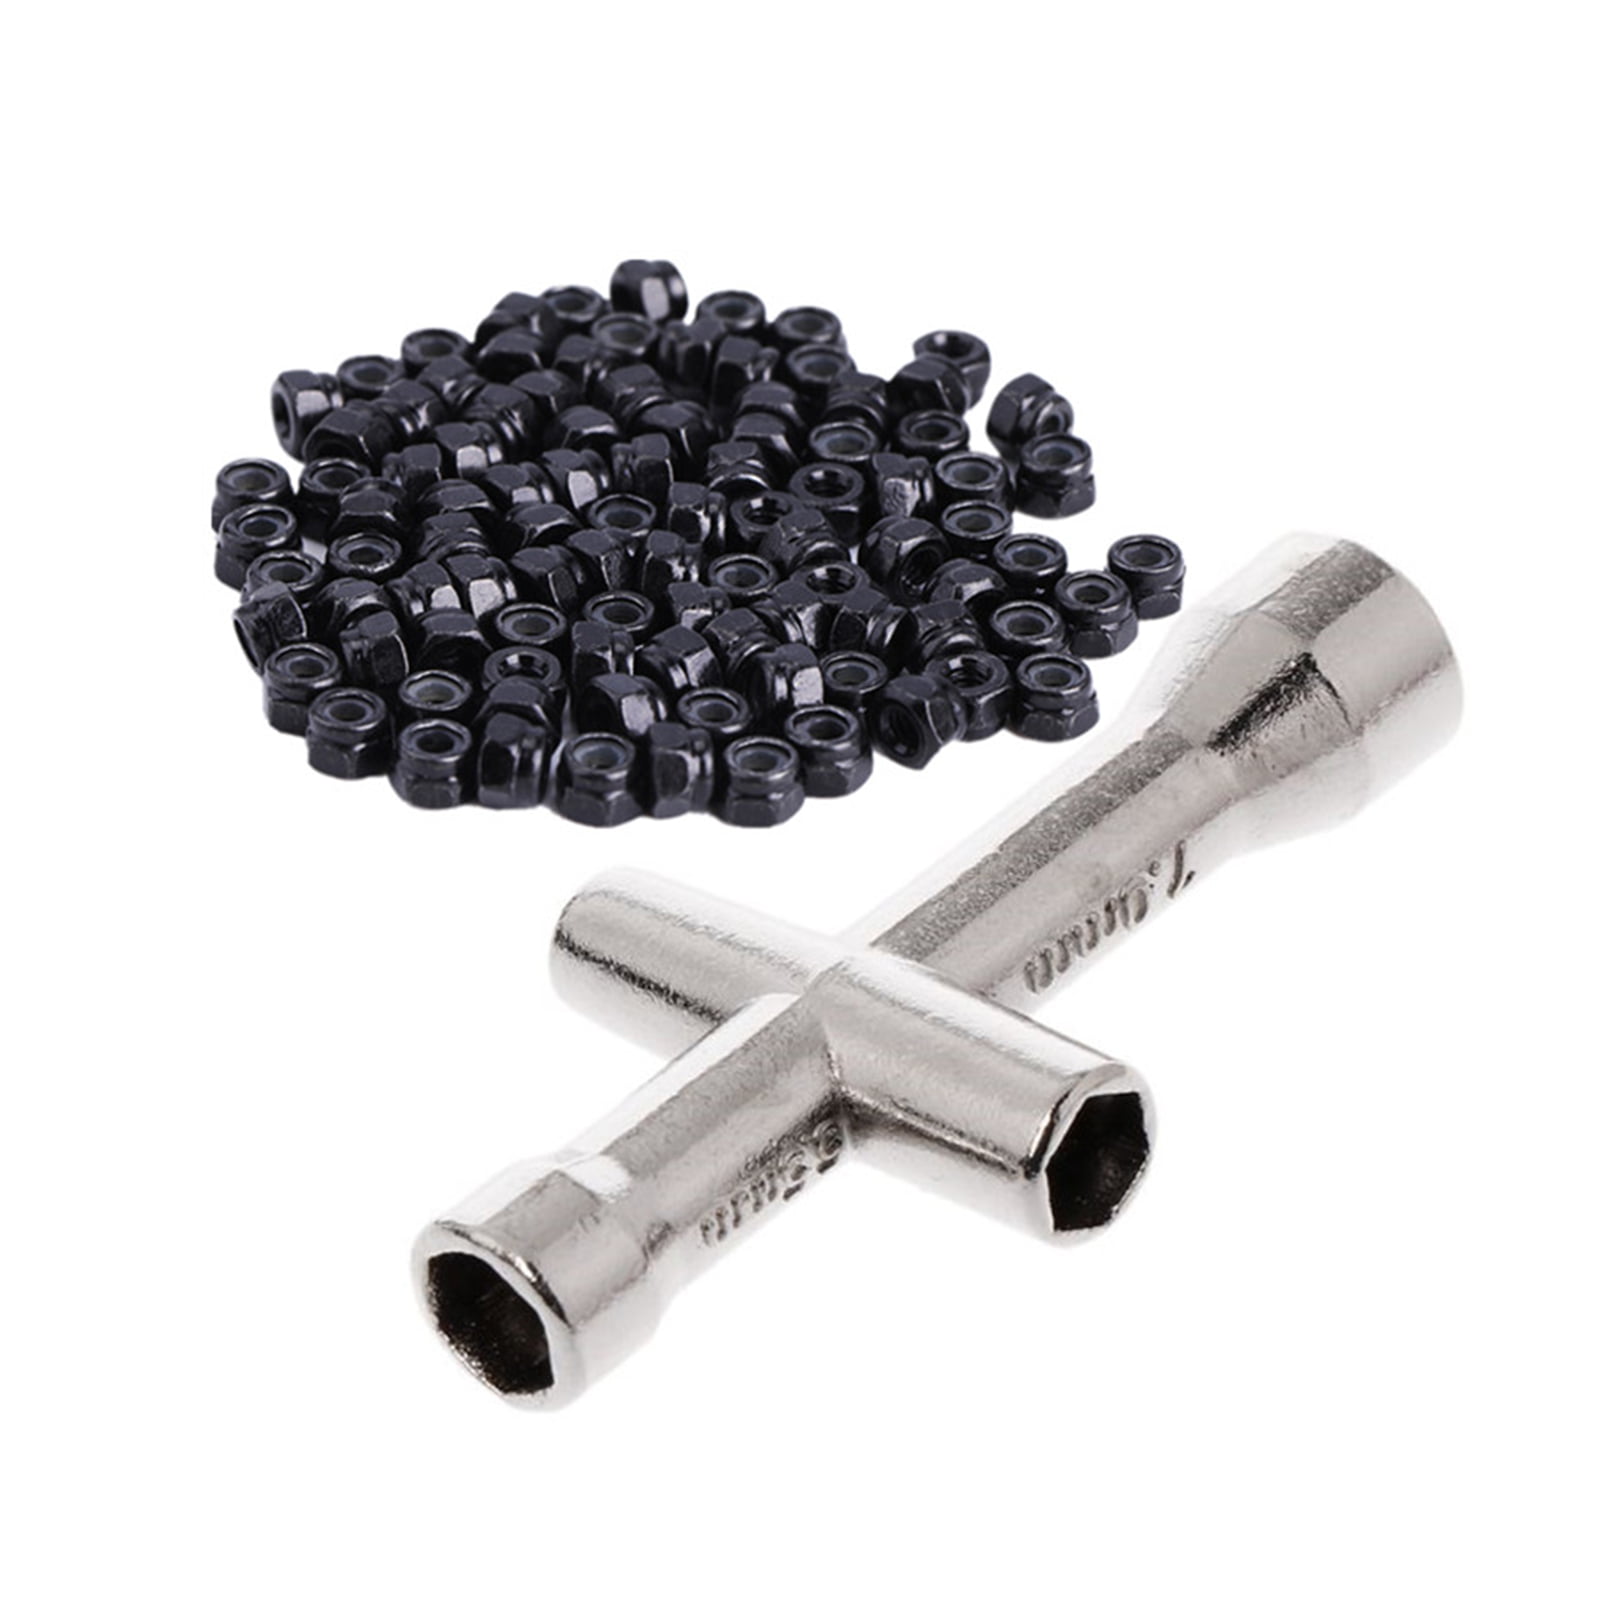 100x M2 x 0.4mm Self-Locking Nylon Insert Hex Nuts Black Carbon Steel 